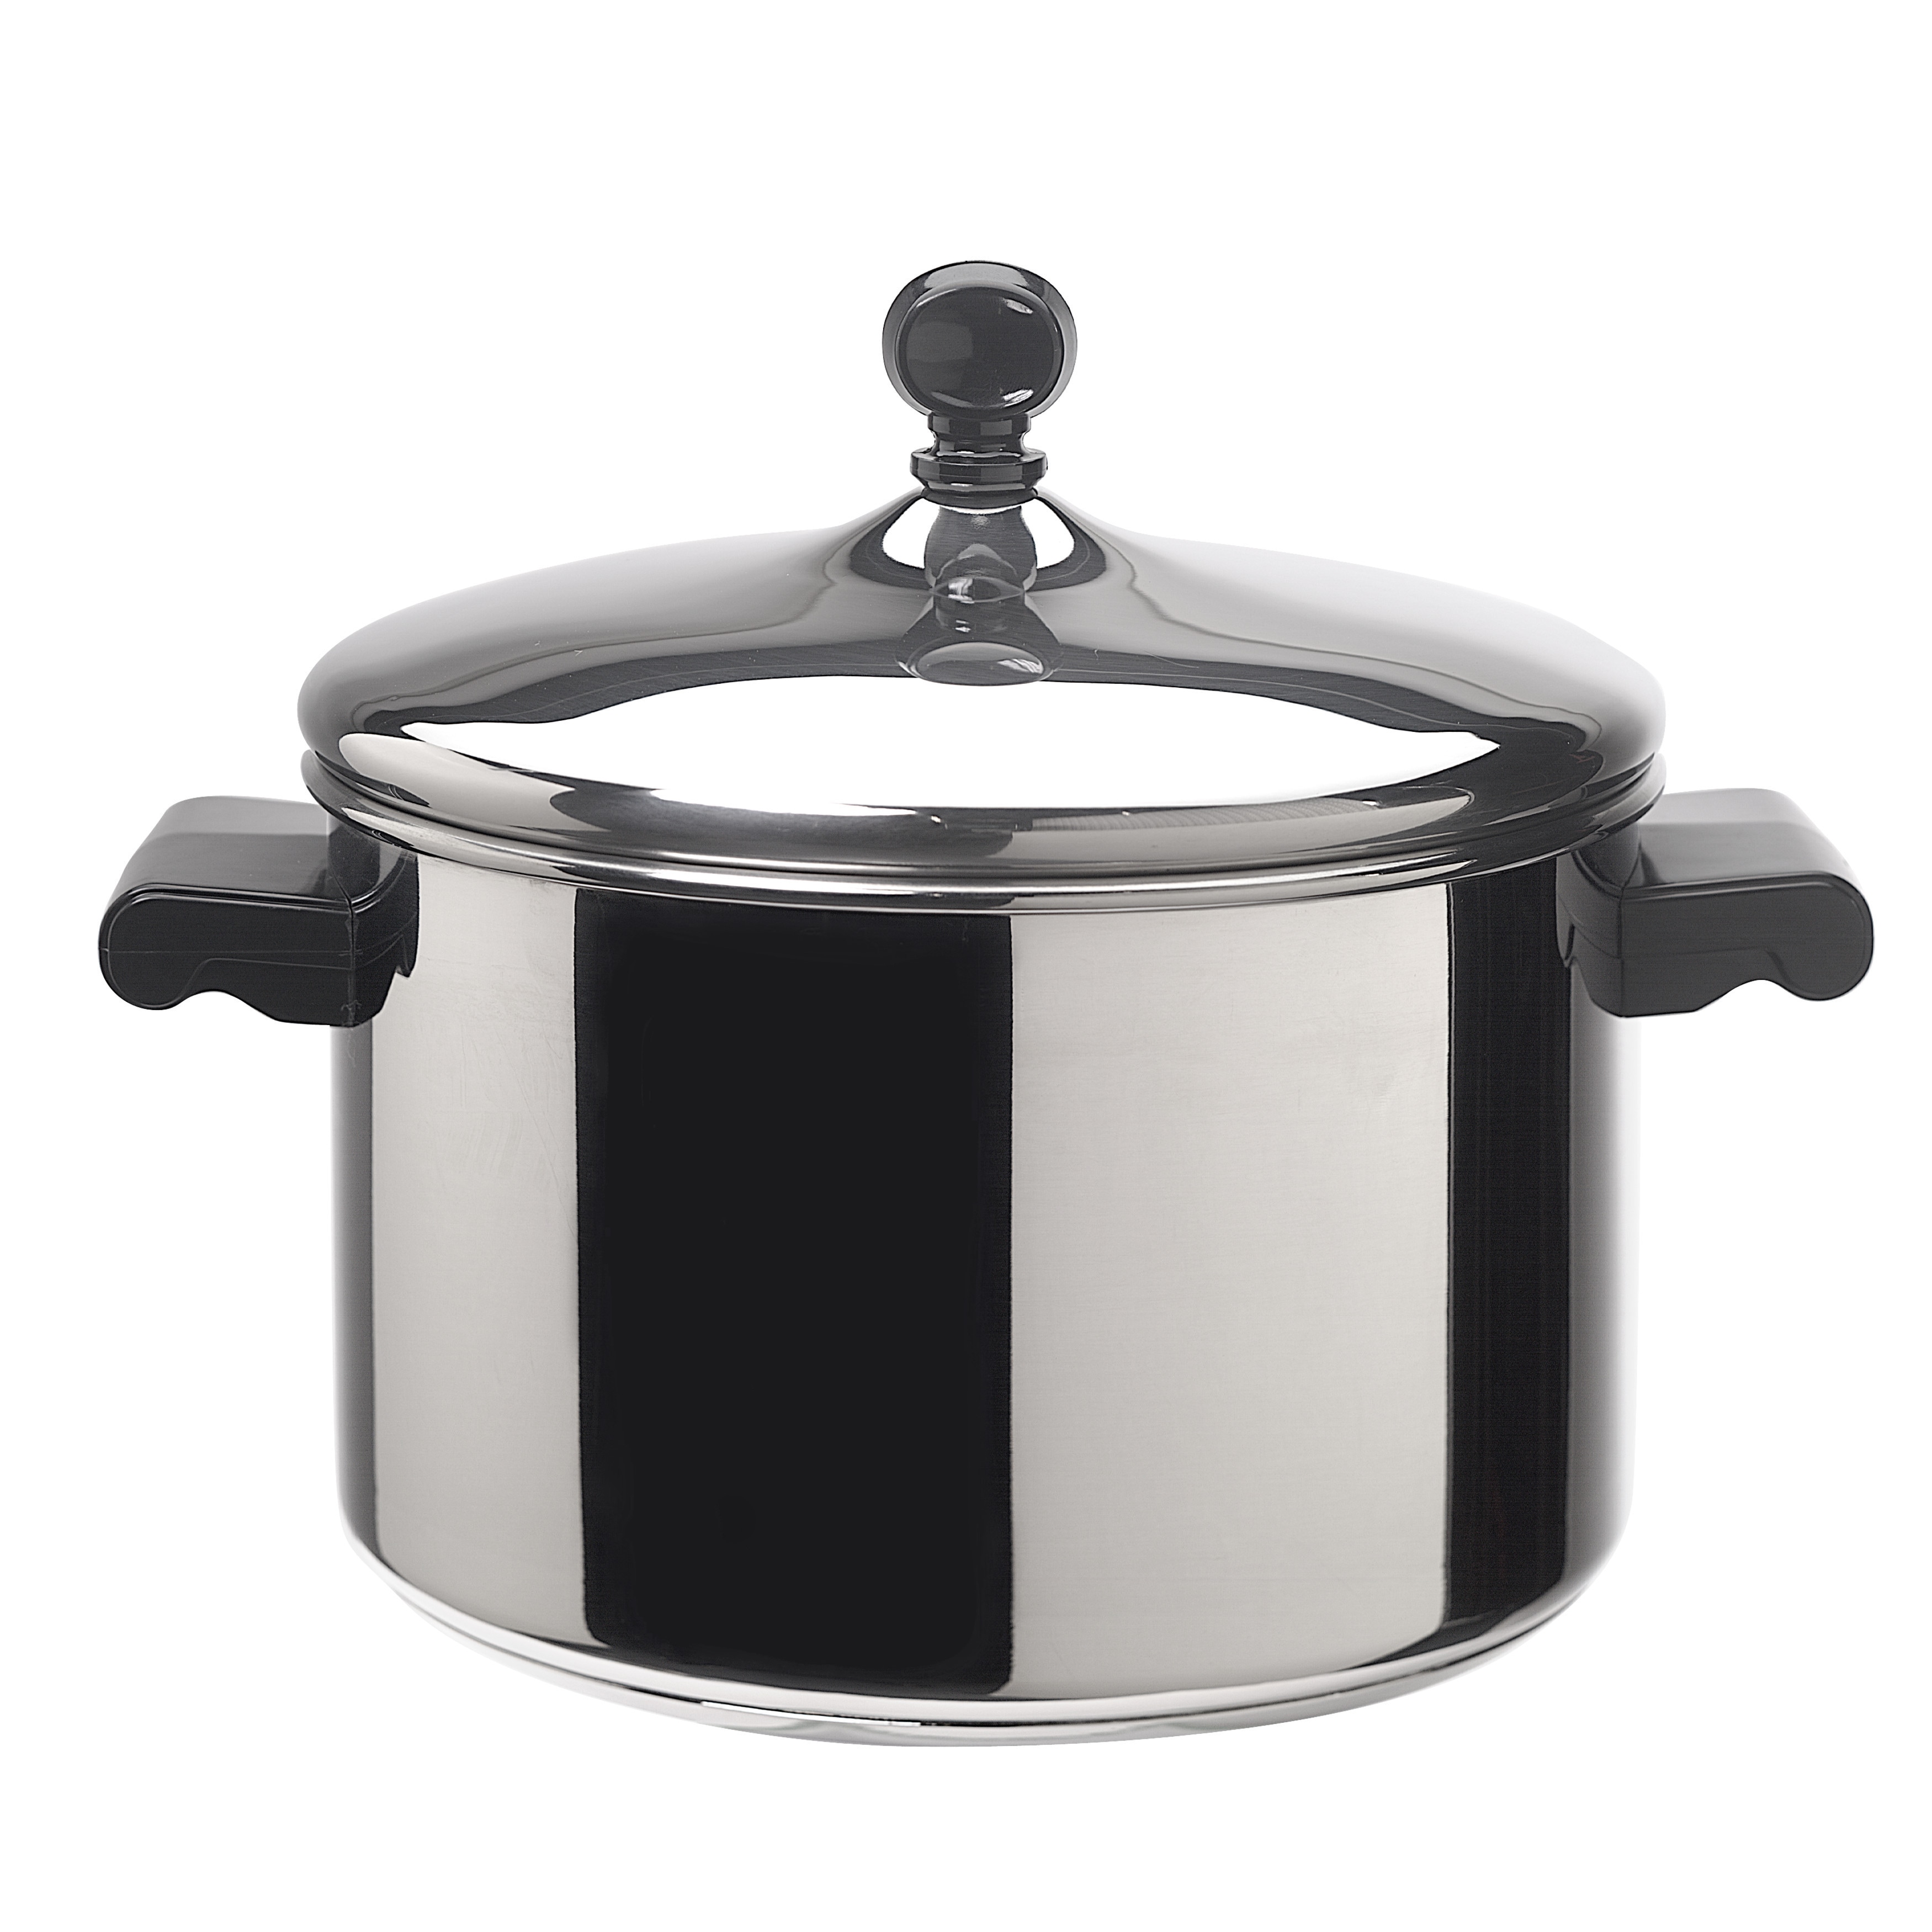 Farberware 3 Quart Saucepan With Double Boiler and Lid R 